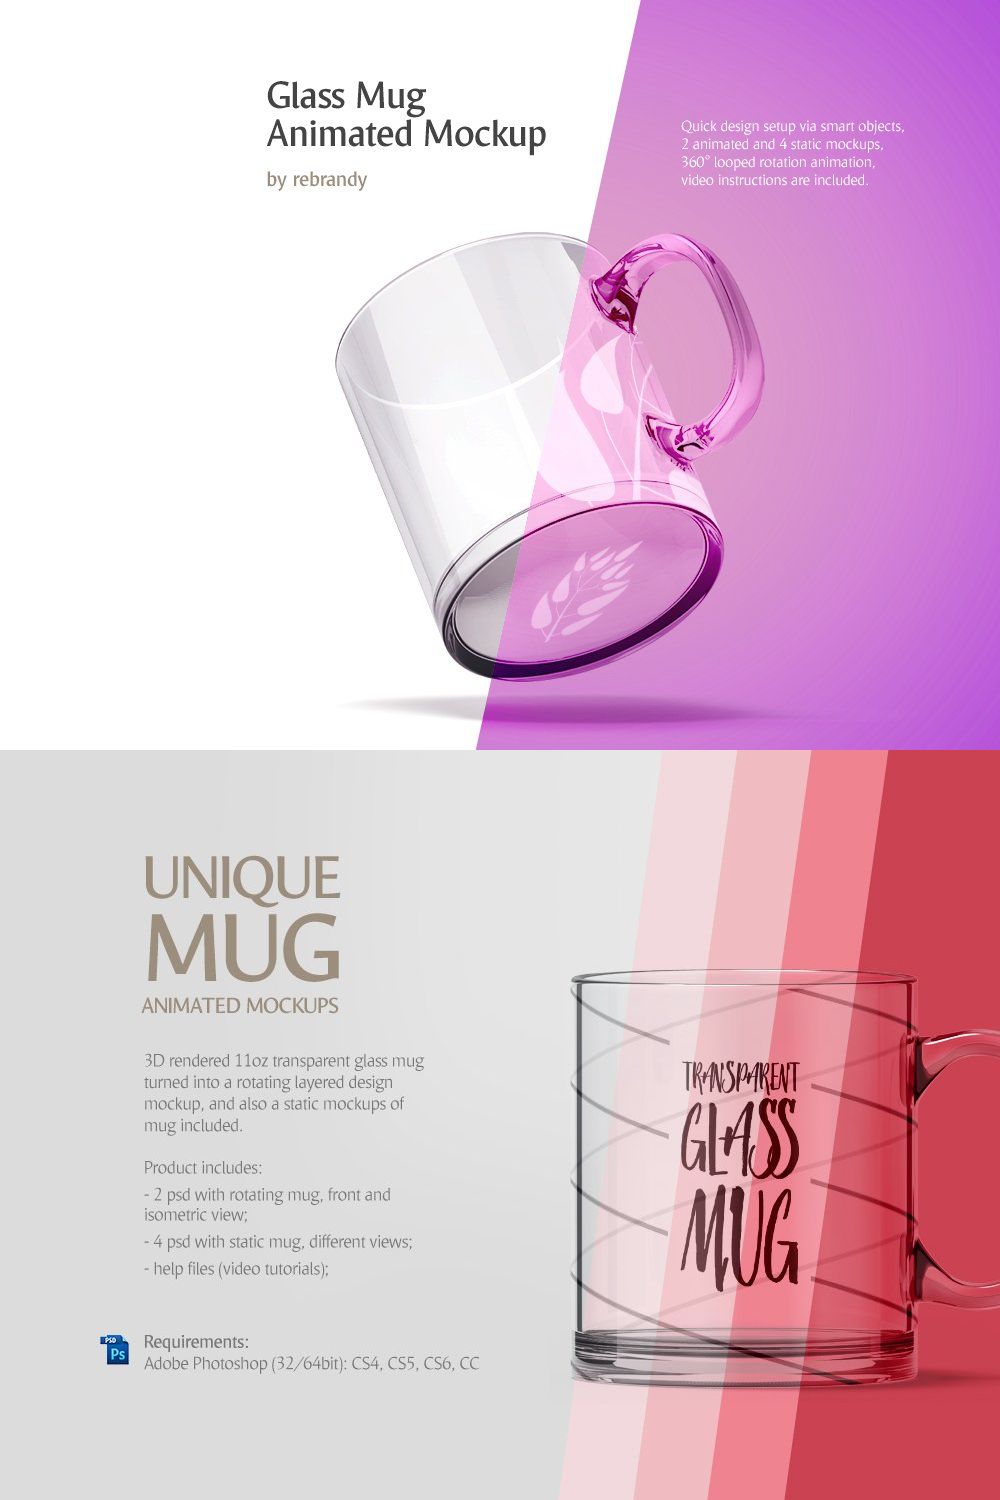 Glass Mug Animated Mockup pinterest preview image.